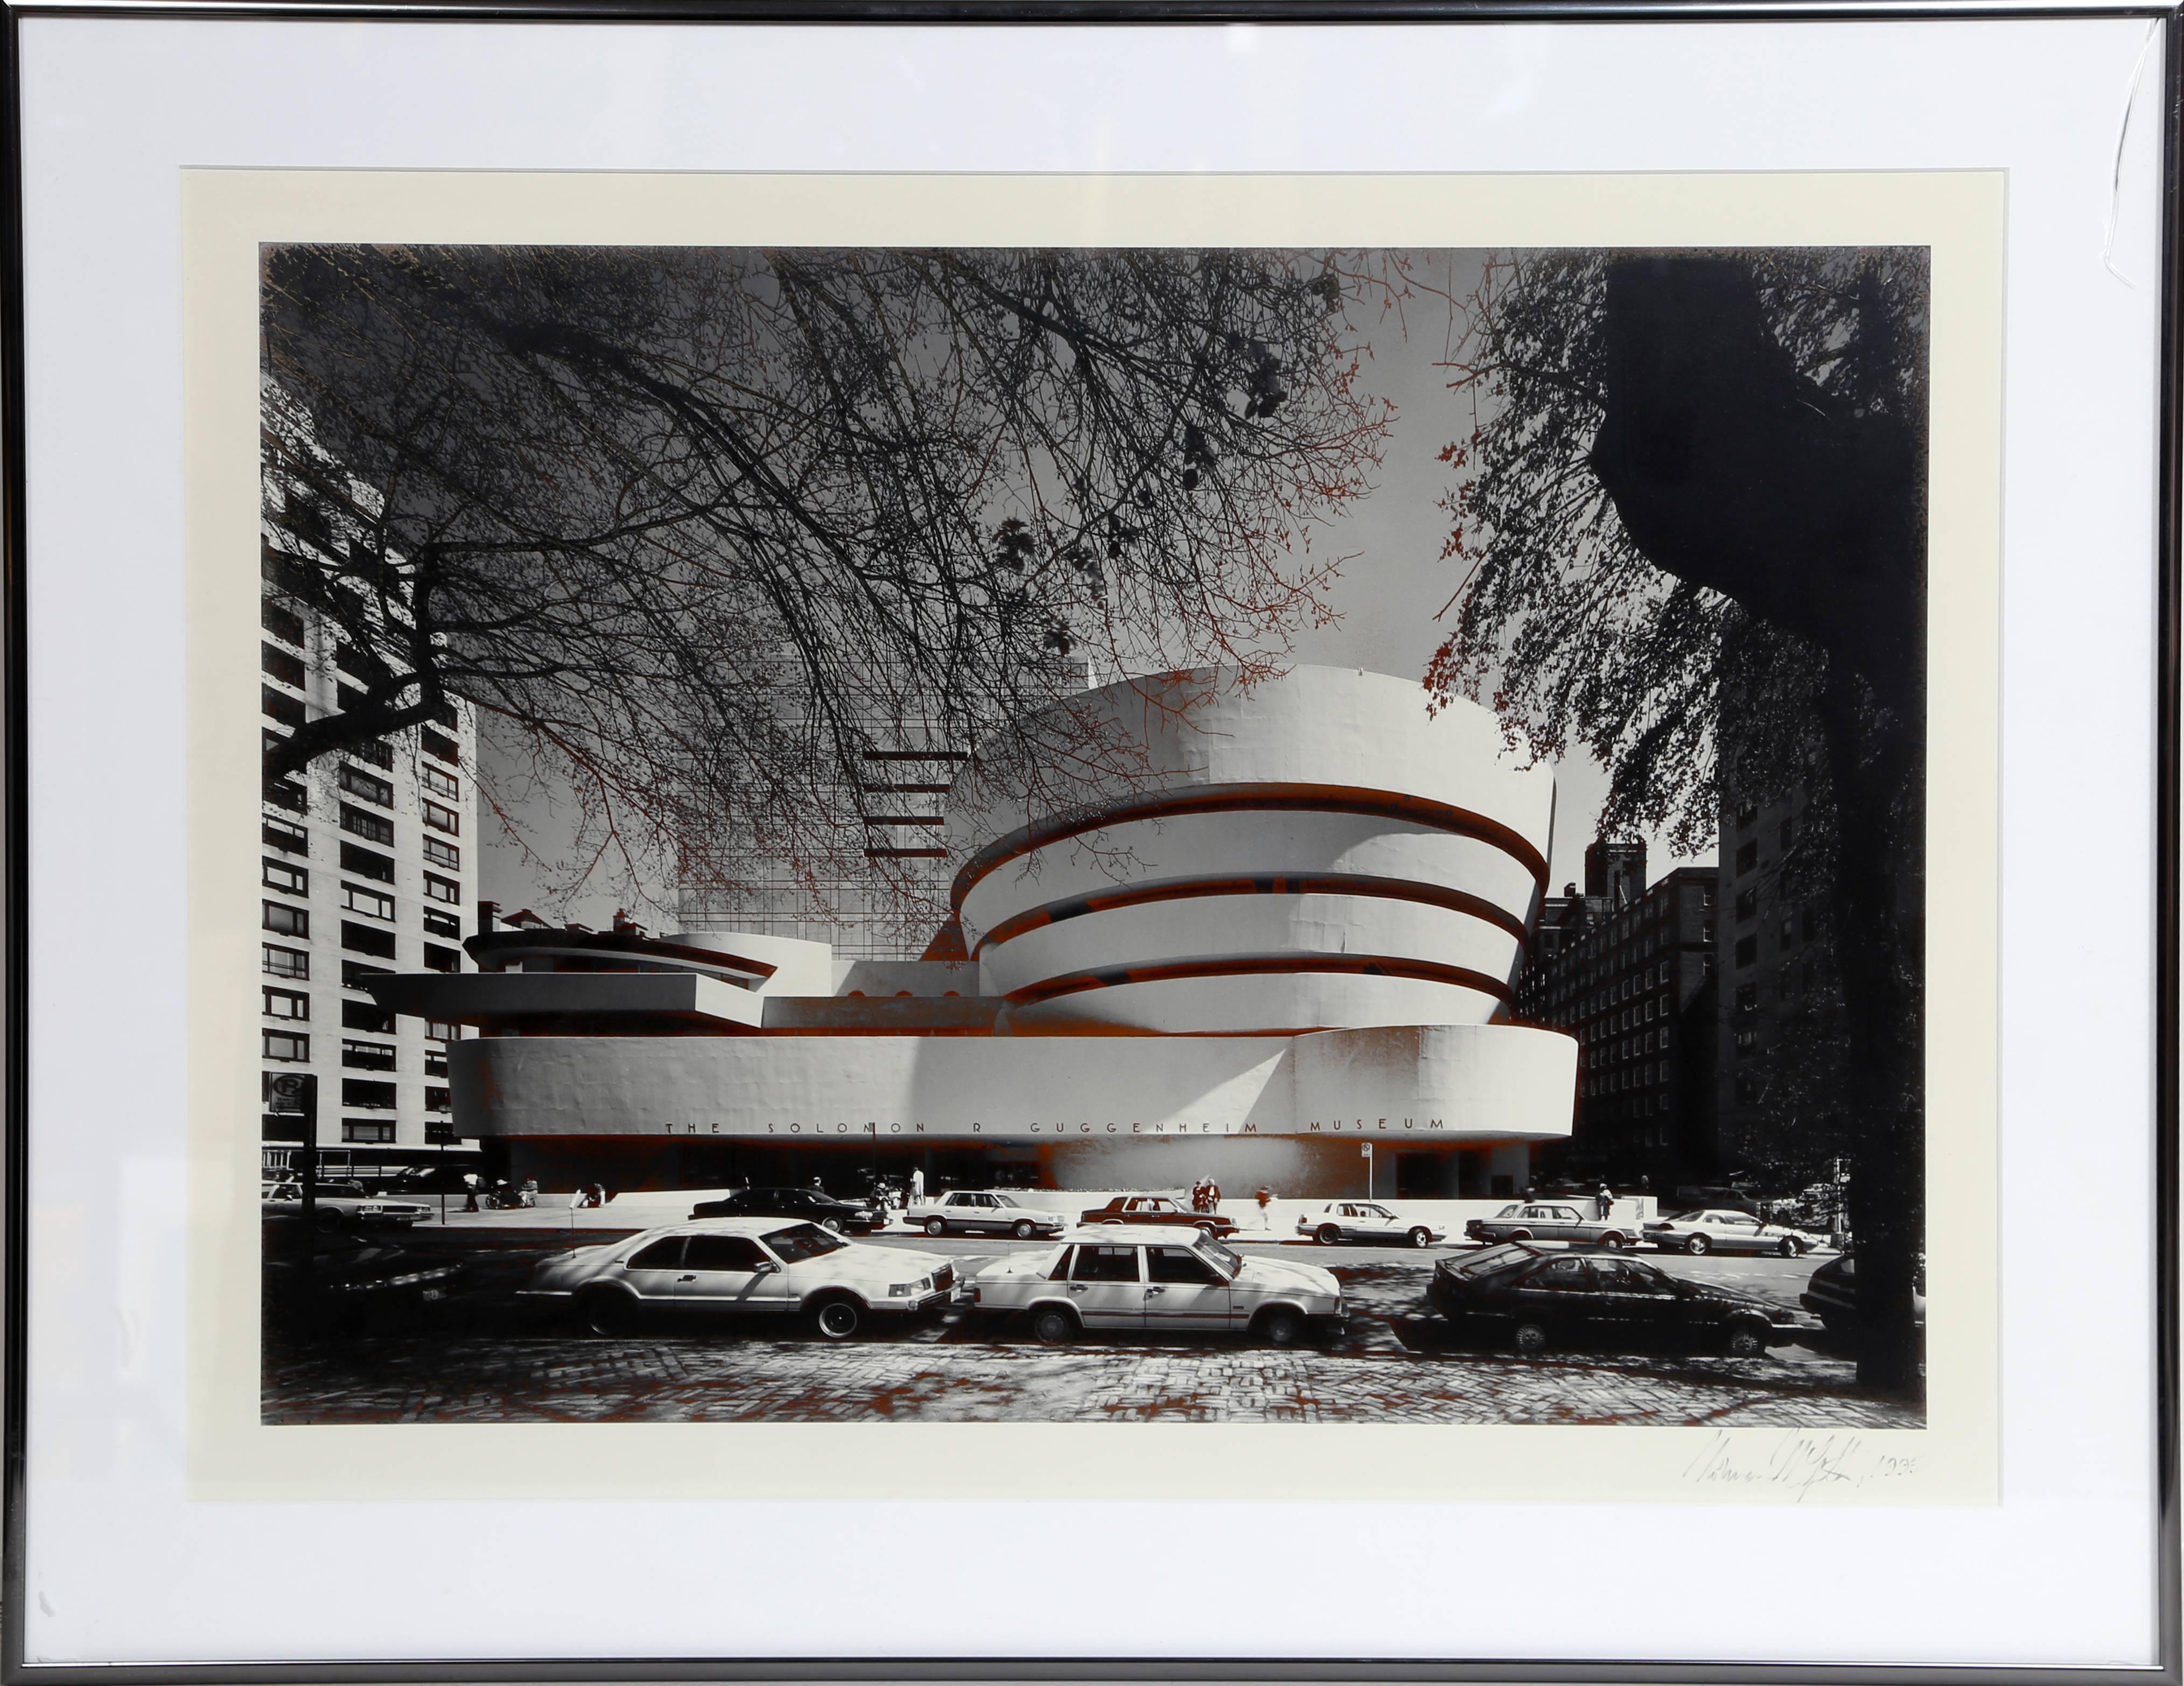 Artiste : Norman McGrath
Titre : Musée Guggenheim
Année : 1995
Moyen :	Photographie, signée et datée à droite. 
Taille du papier : 22 x 17 pouces/ 56 x 43 cm
Taille du cadre : 26 x 21 pouces/ 66 x 53 cm 